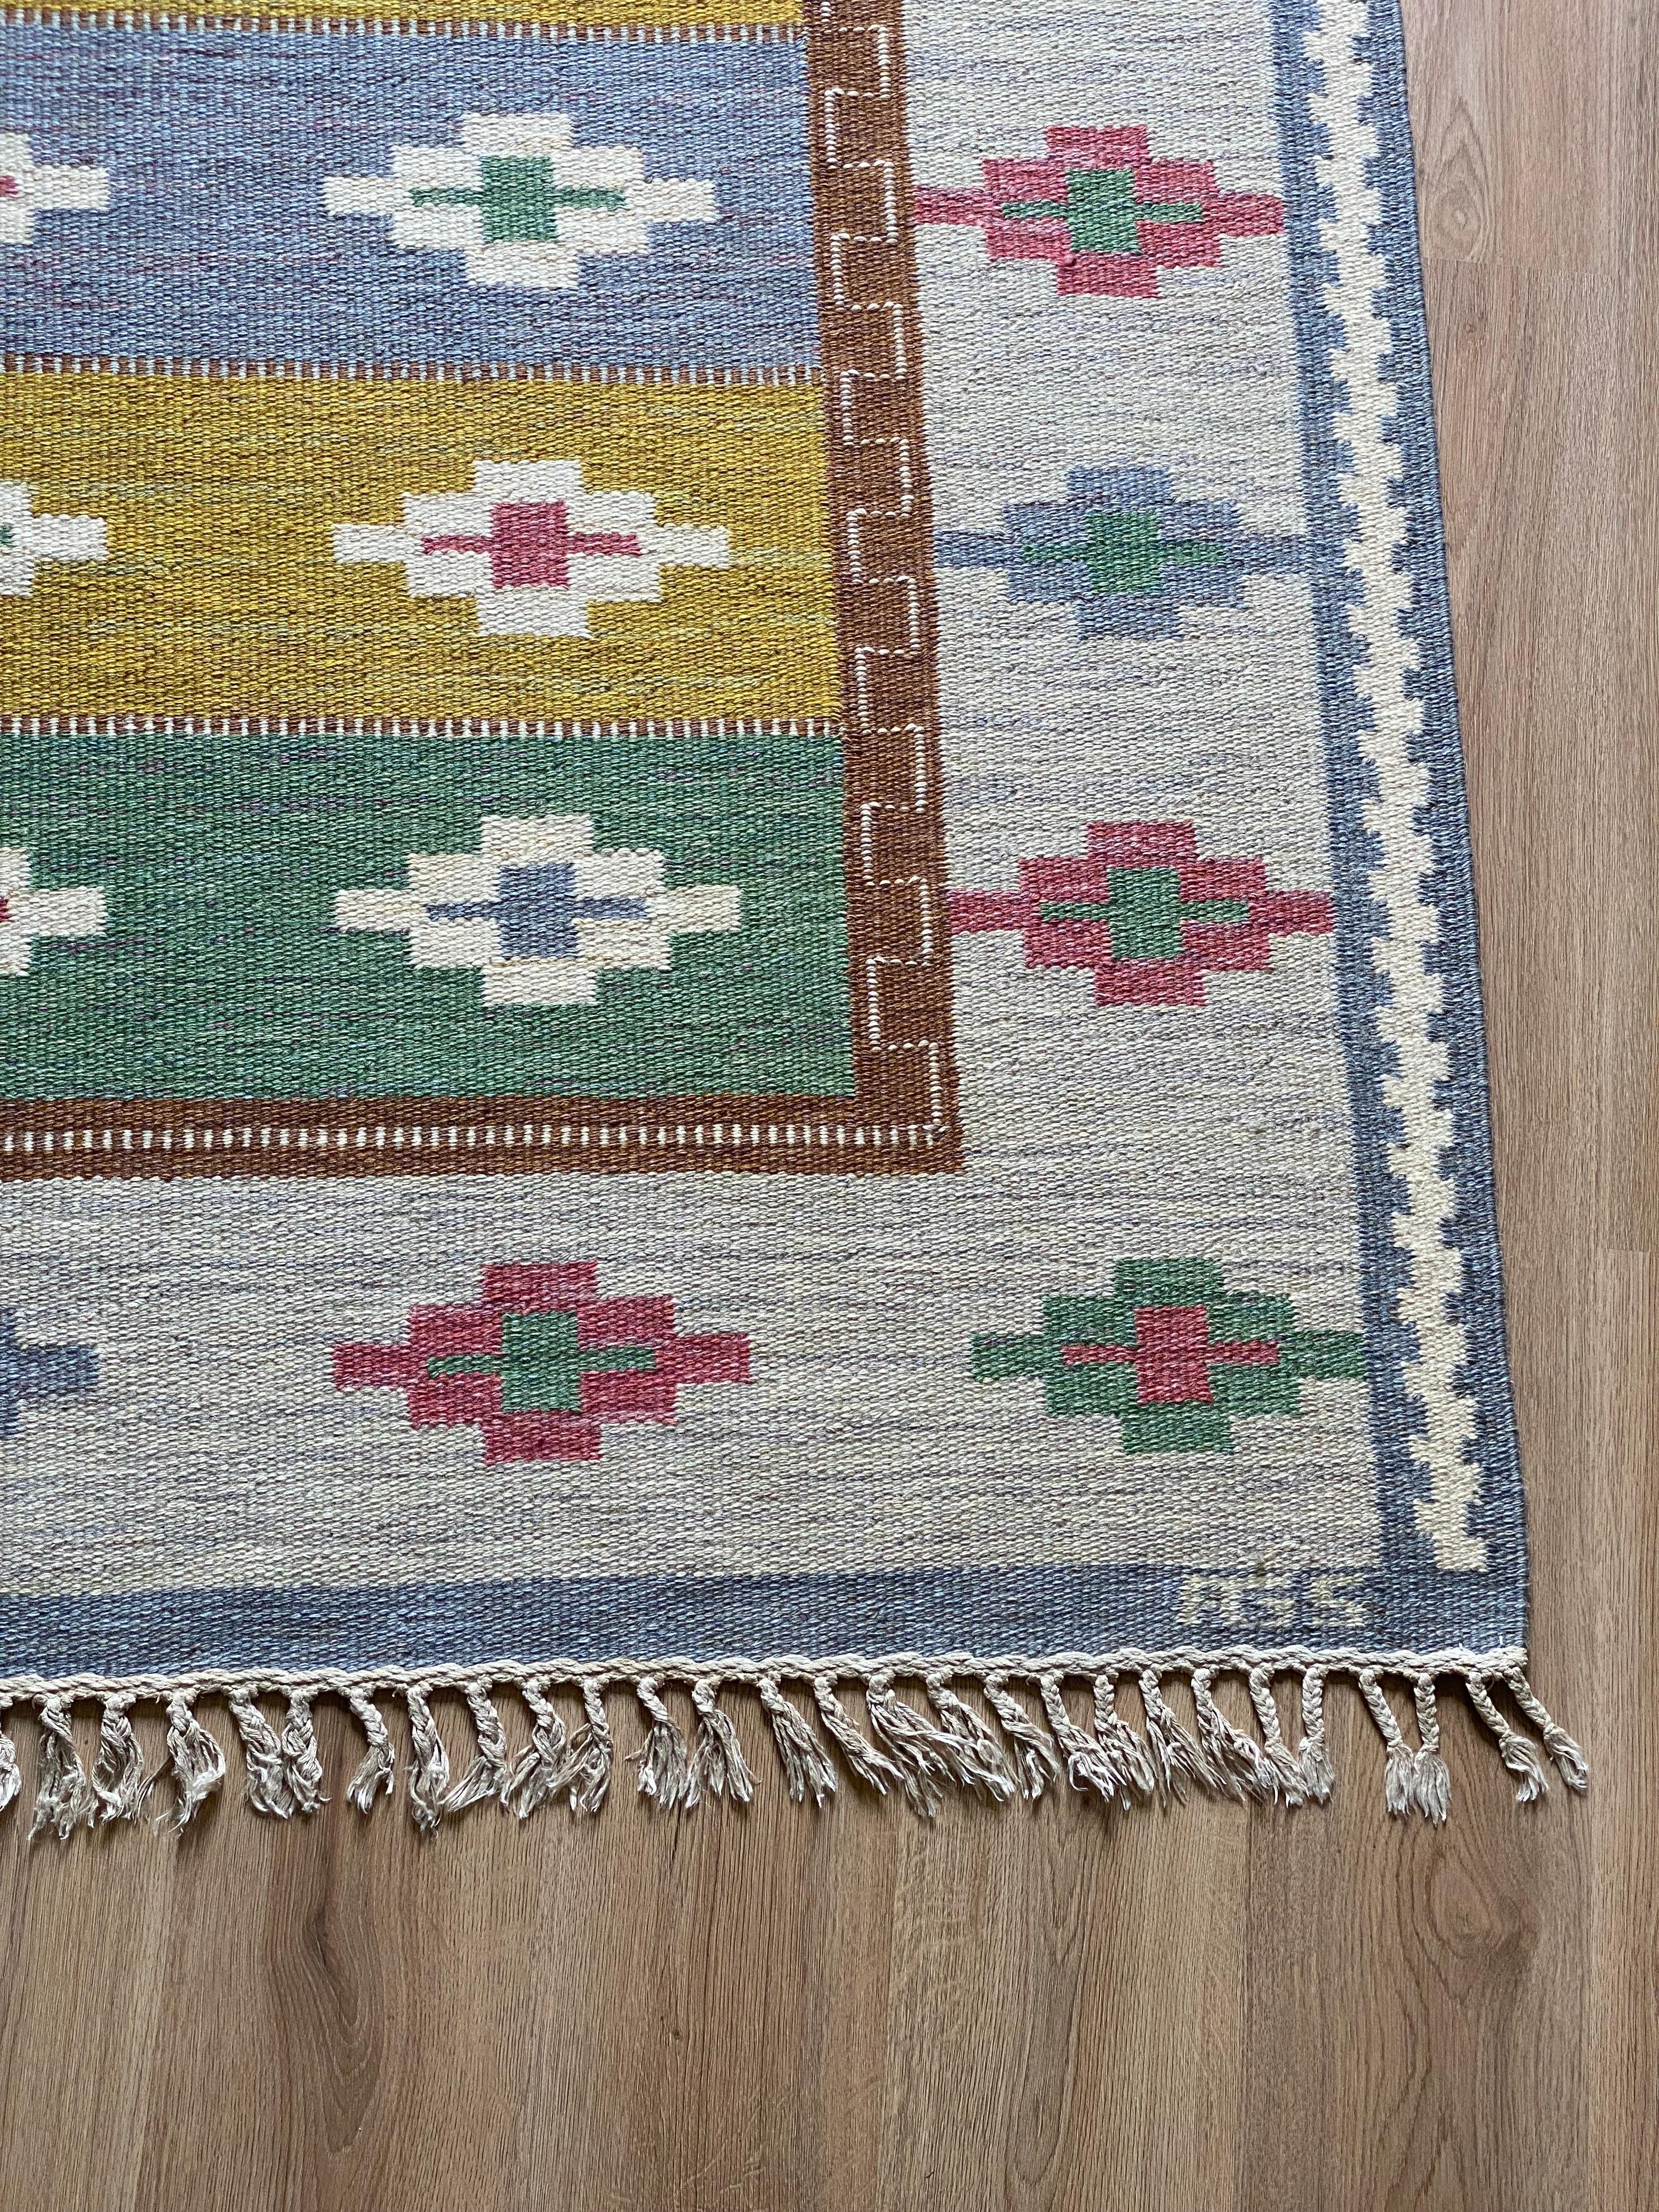 Scandinave moderne Tapis scandinave moderne en laine tissée à plat 